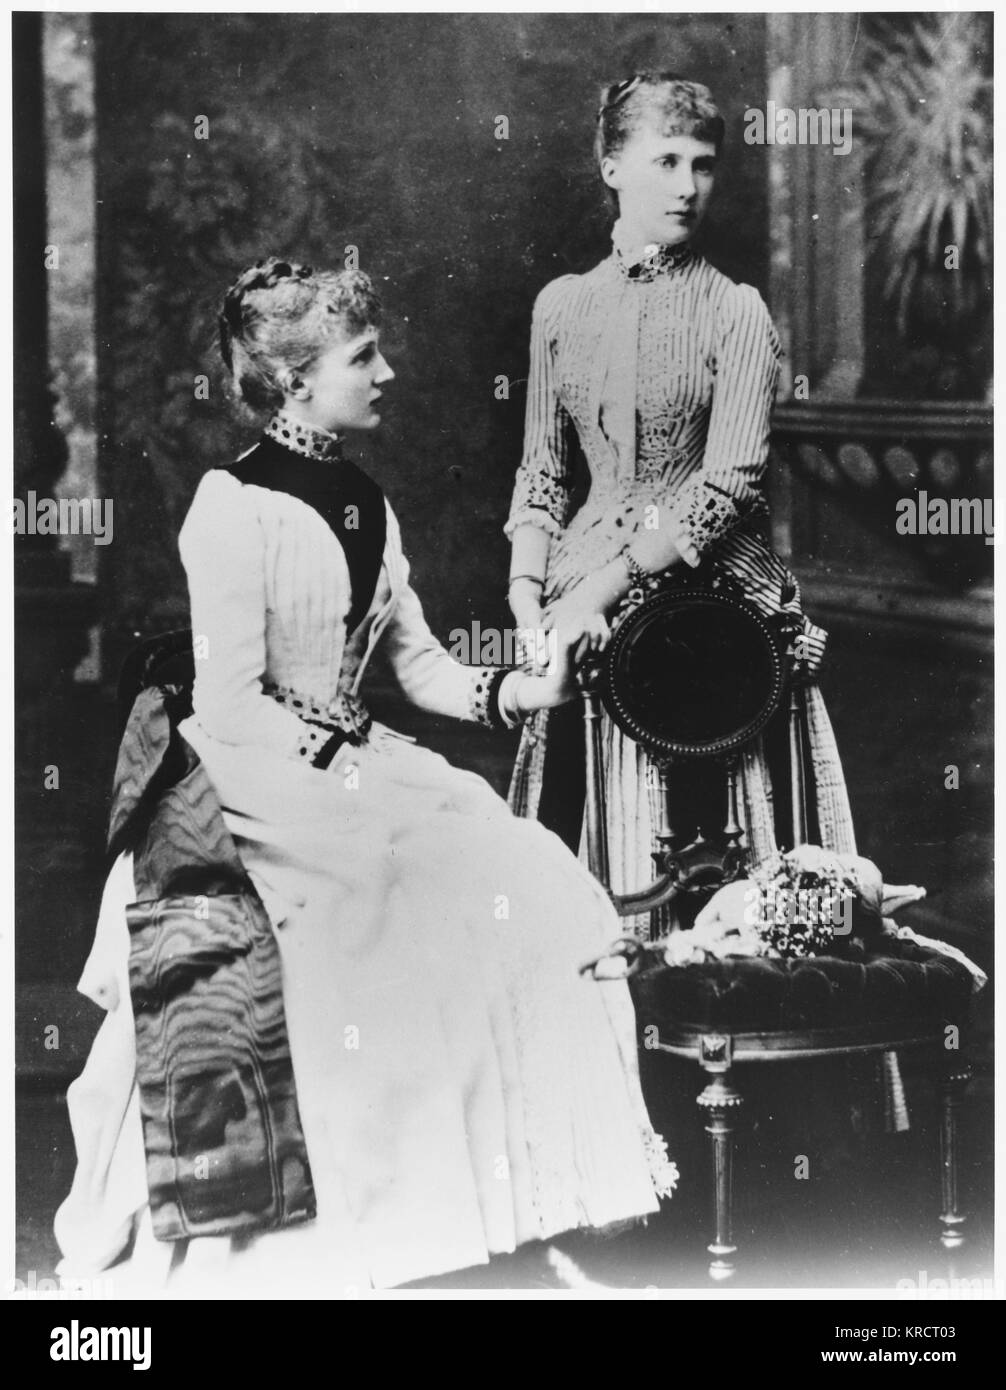 Élisabeth FEODOROVNA - Grande Duchesse russe avec compagnon inconnu Date : FL. 1880 Banque D'Images